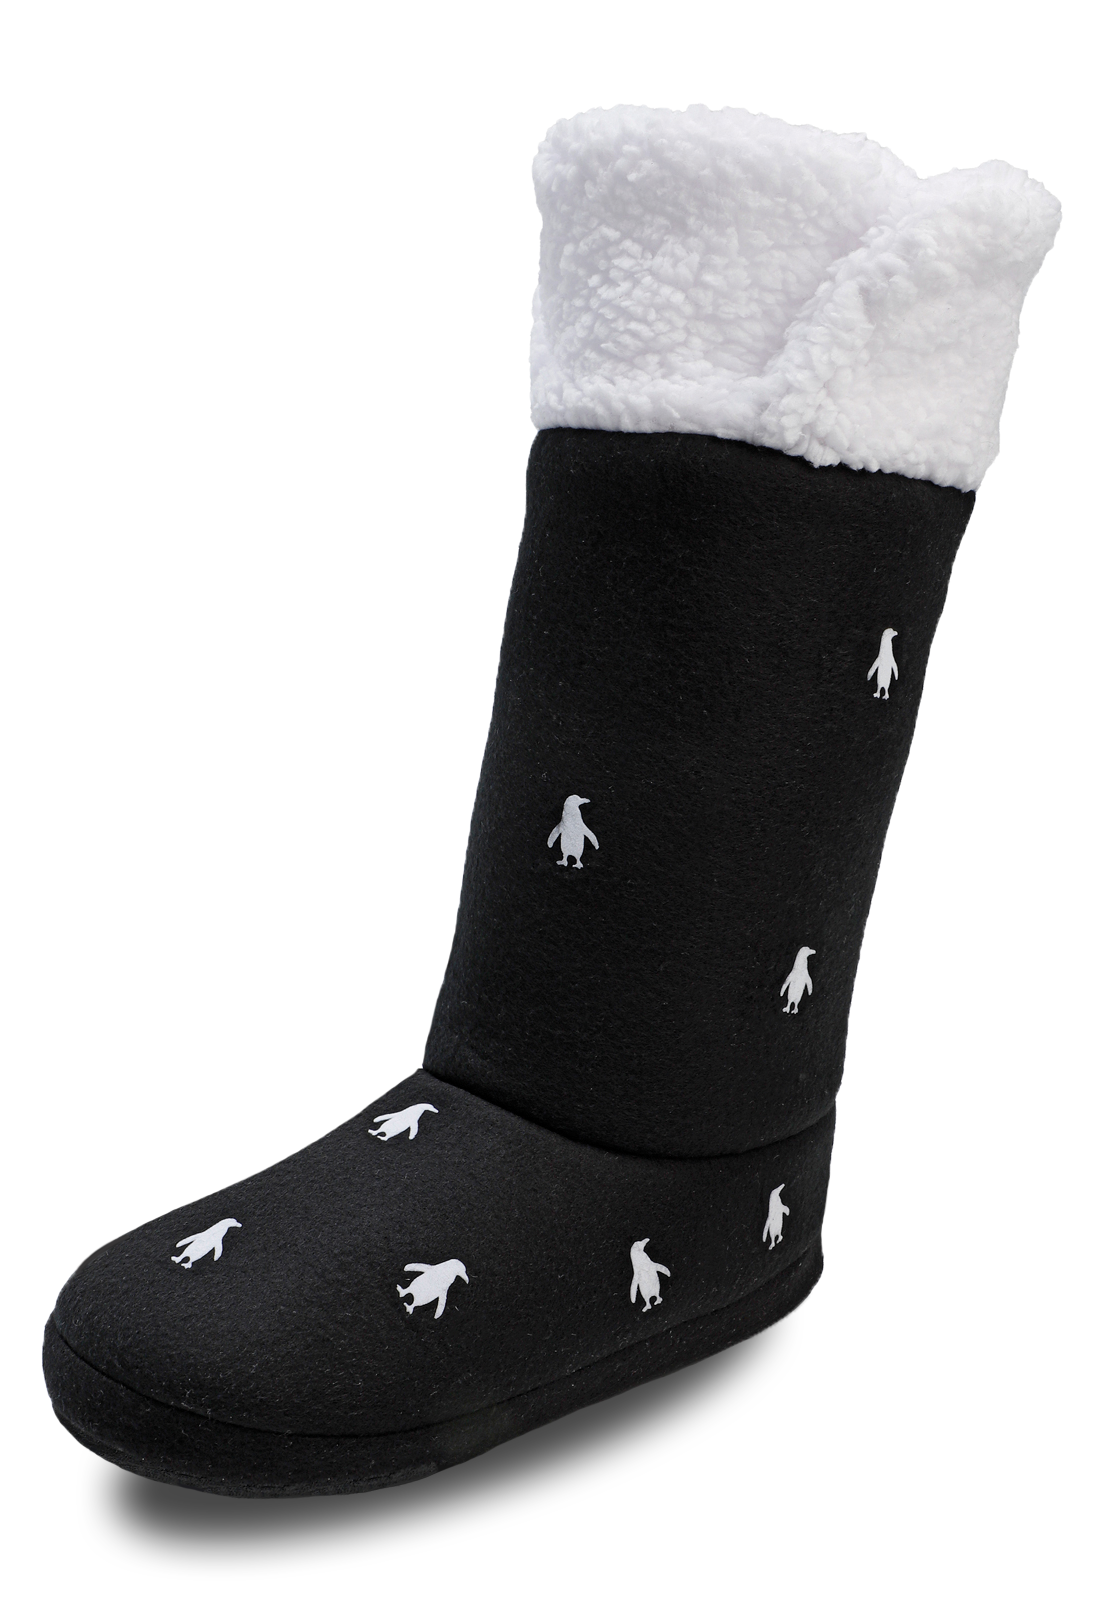 vista diagonal de las botas pantuflas negras con pinguinos blancos y peluche arriba de arctic fox